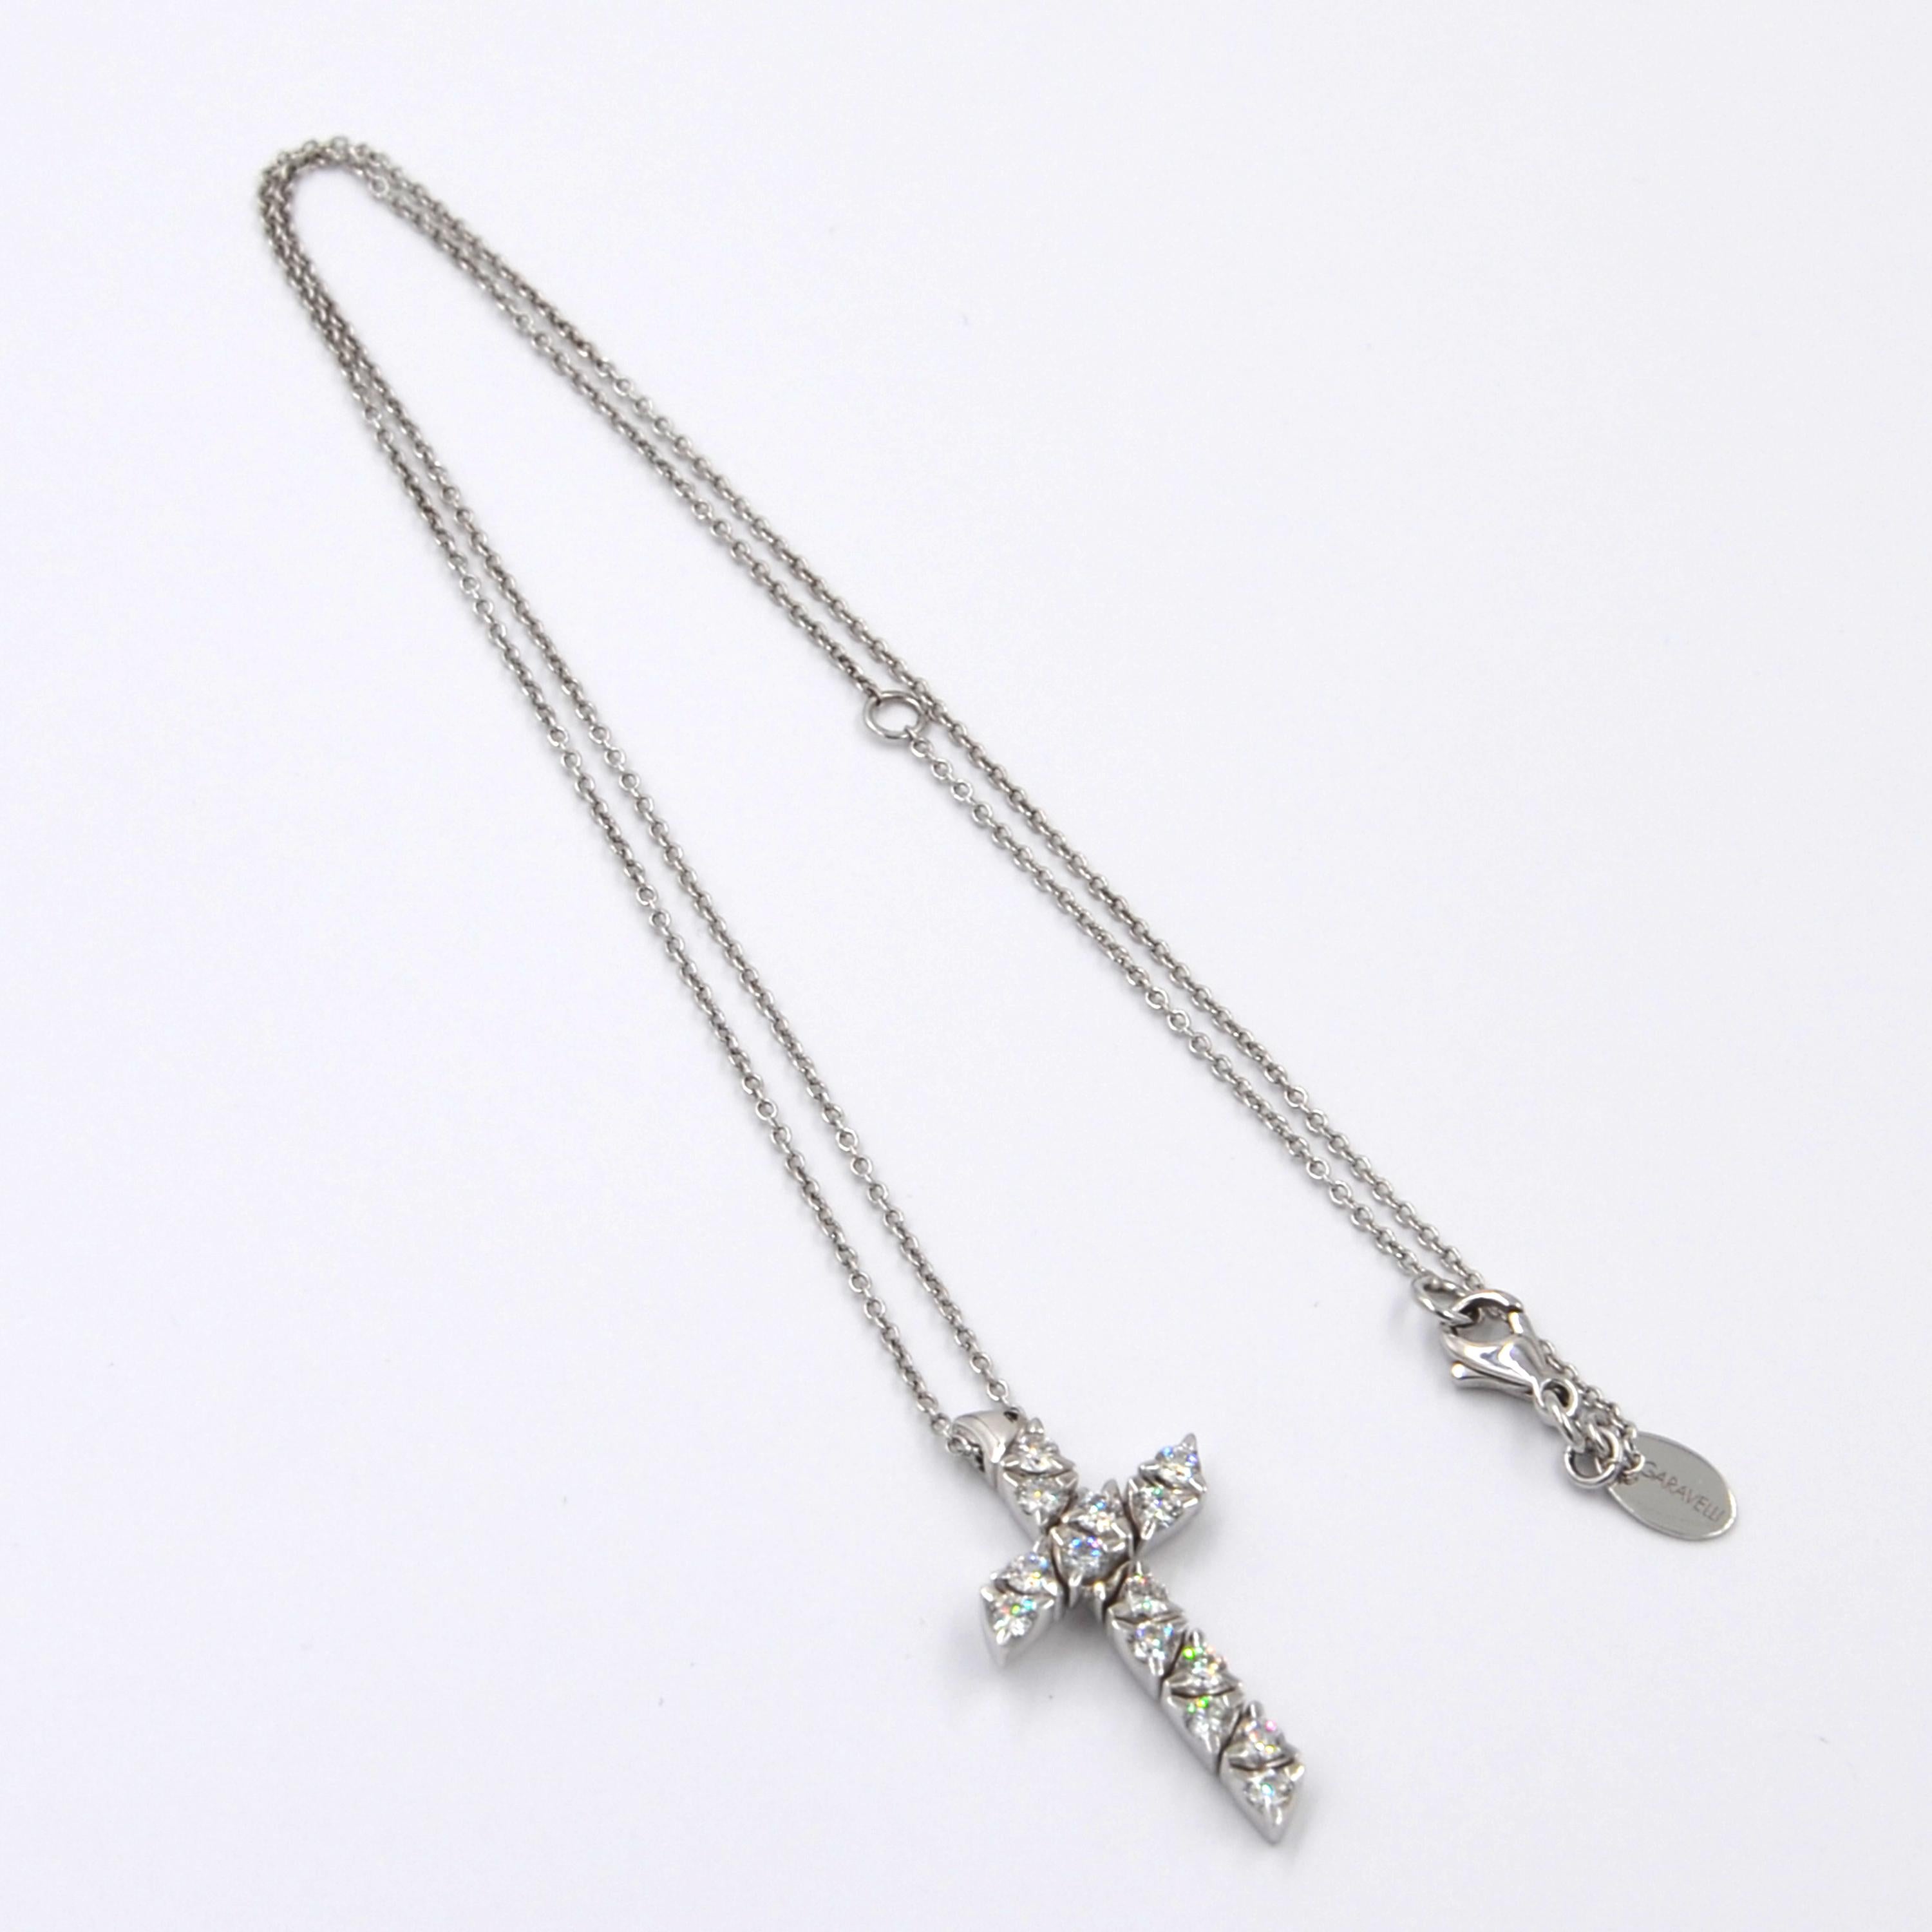 Women's or Men's 18 Karat White Gold White Diamonds Garavelli Cross Pendant Necklace